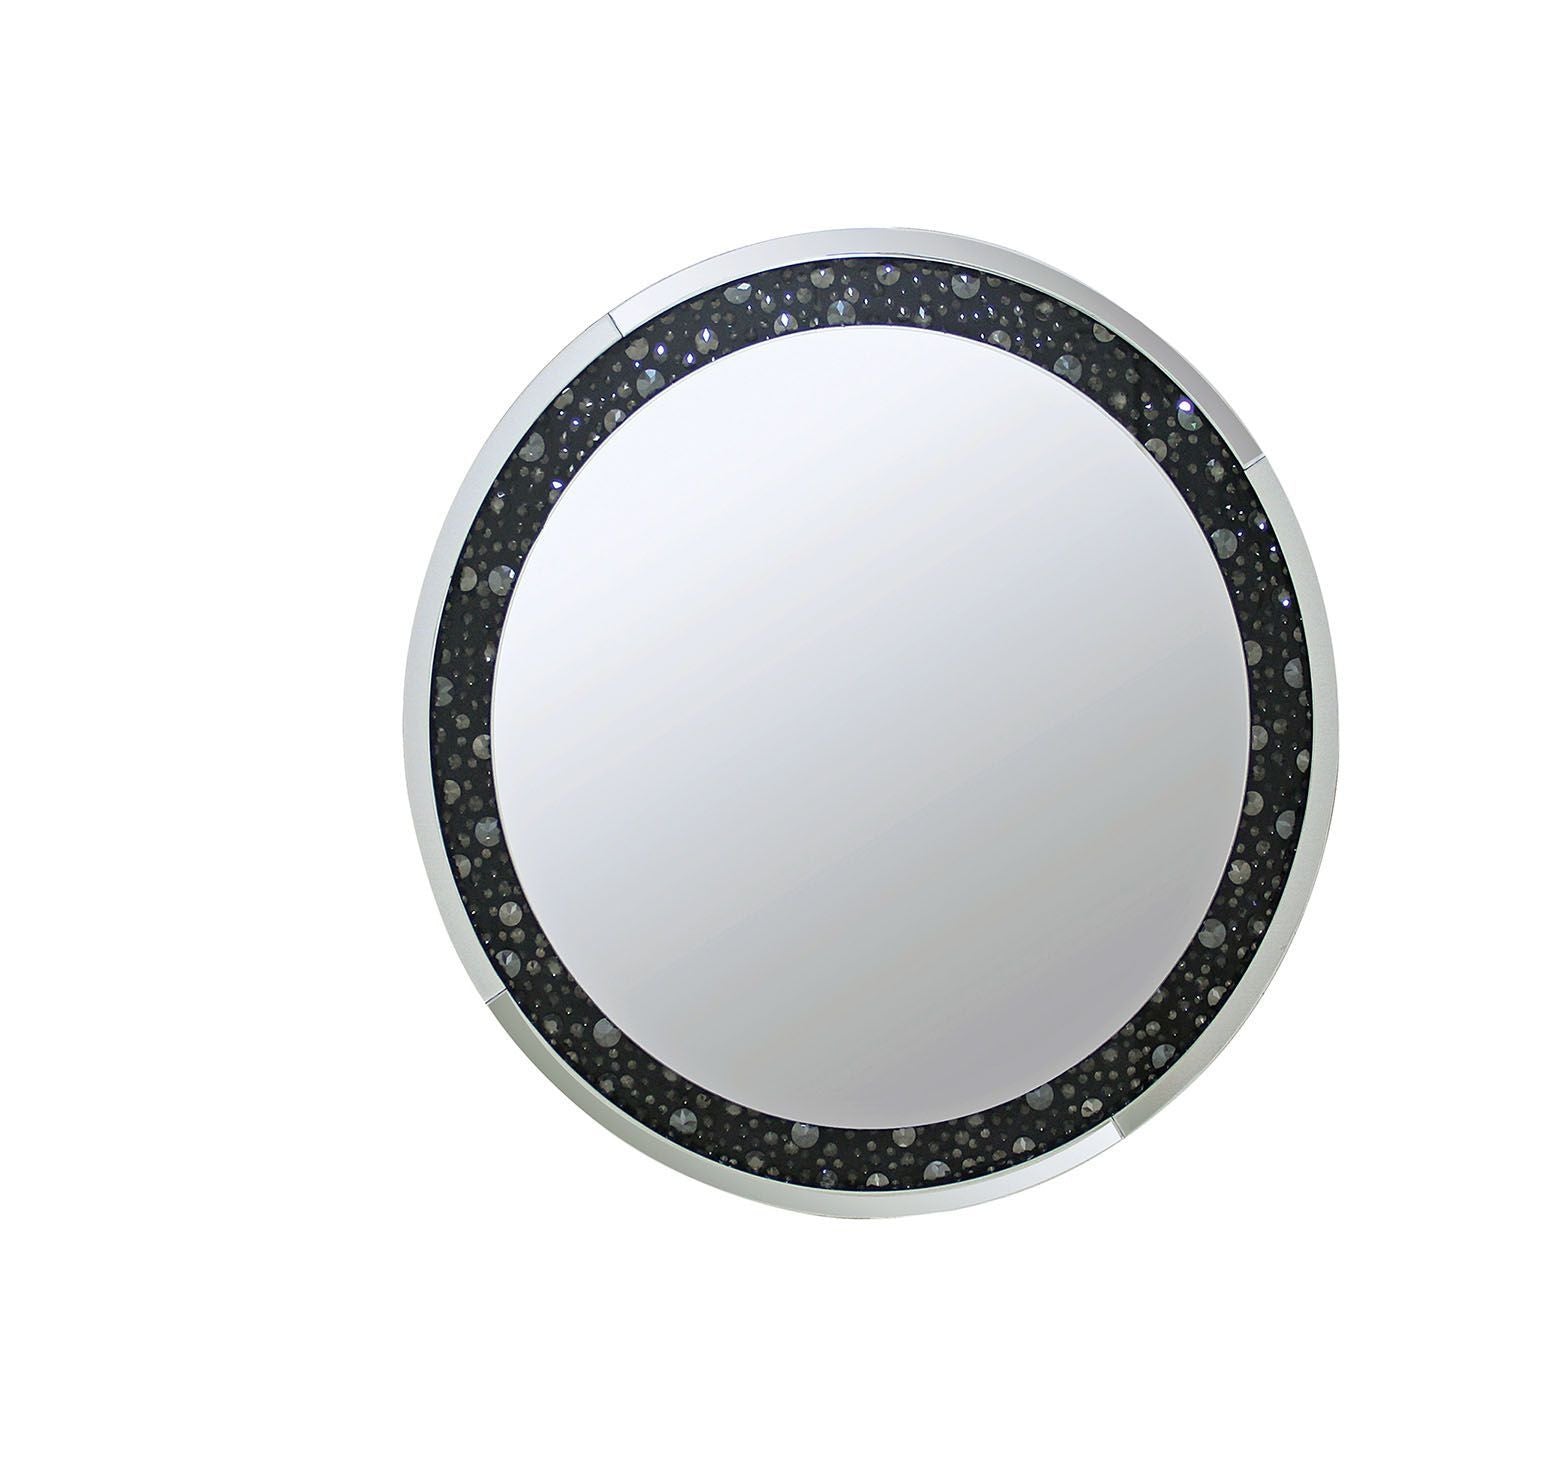 39" Black Round Accent Mirror